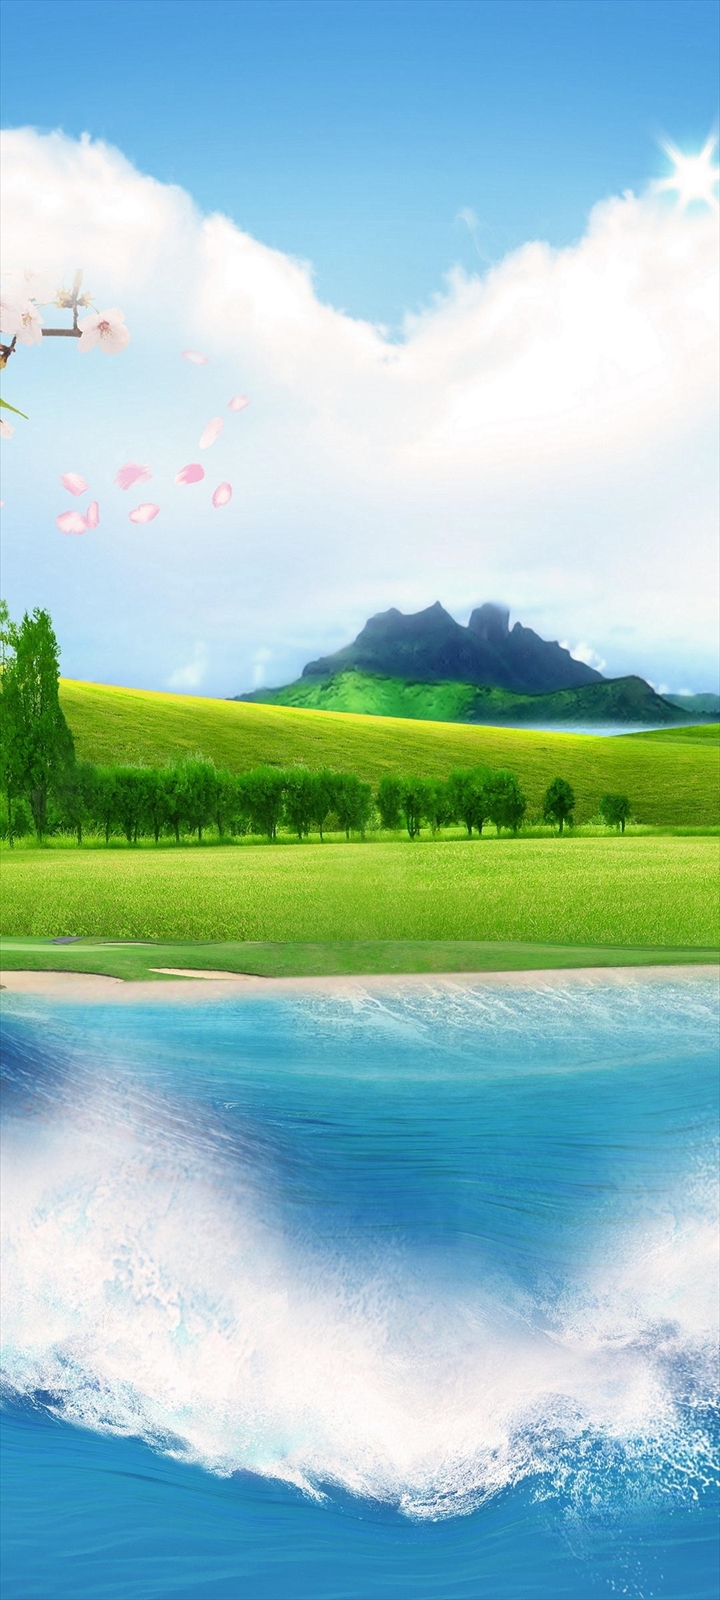 青空 山と緑の平原と海 Galaxy A32 5g Androidスマホ壁紙 待ち受け スマラン